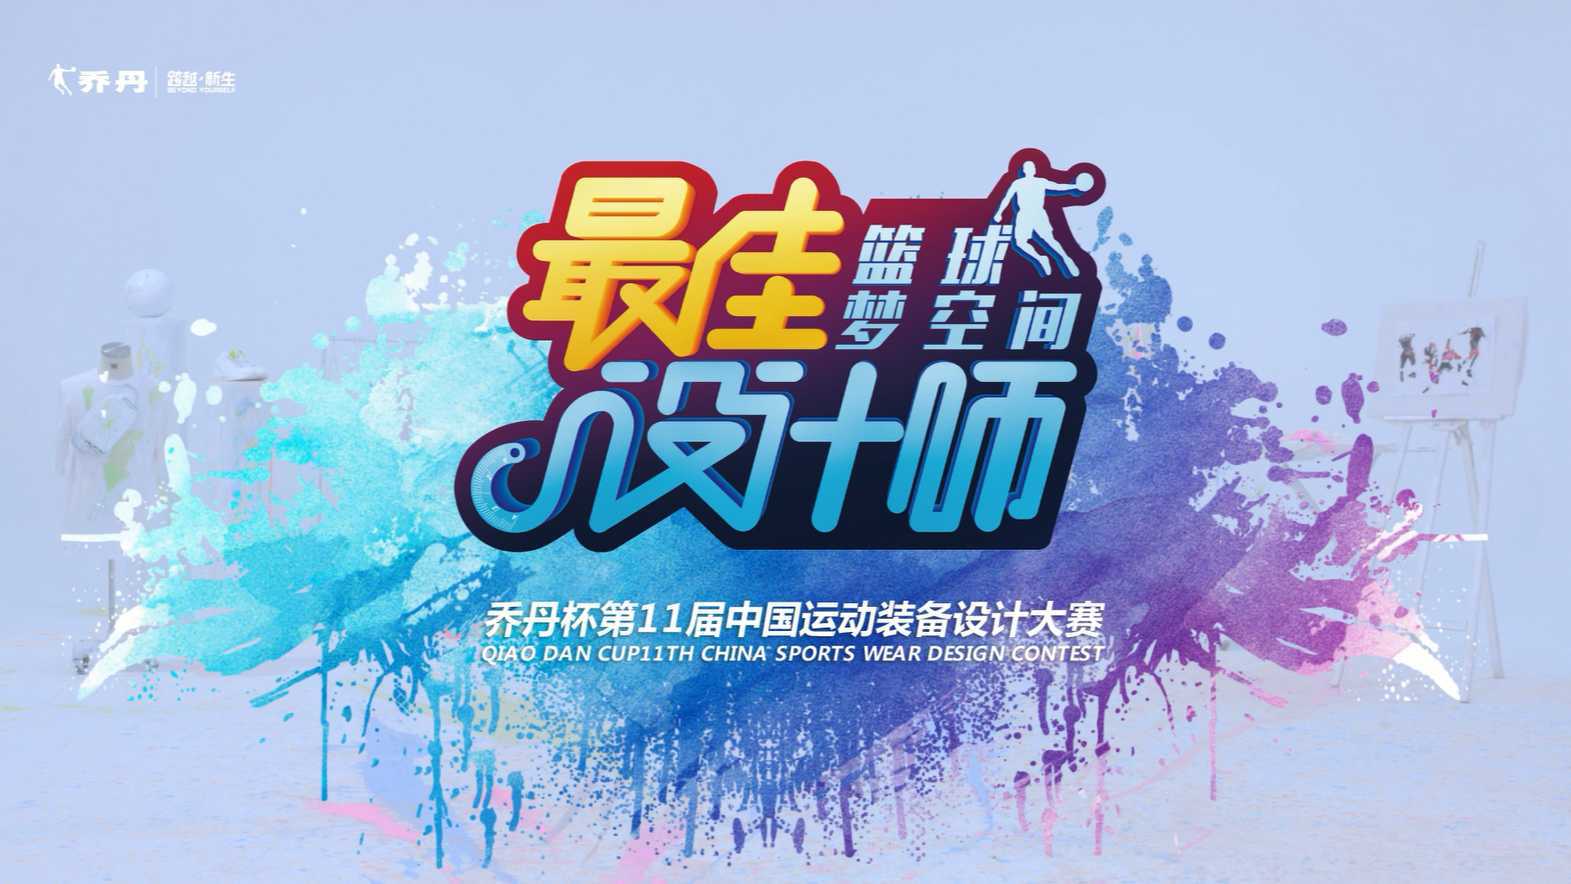 【活动宣传片】乔丹中国运动装备设计大赛